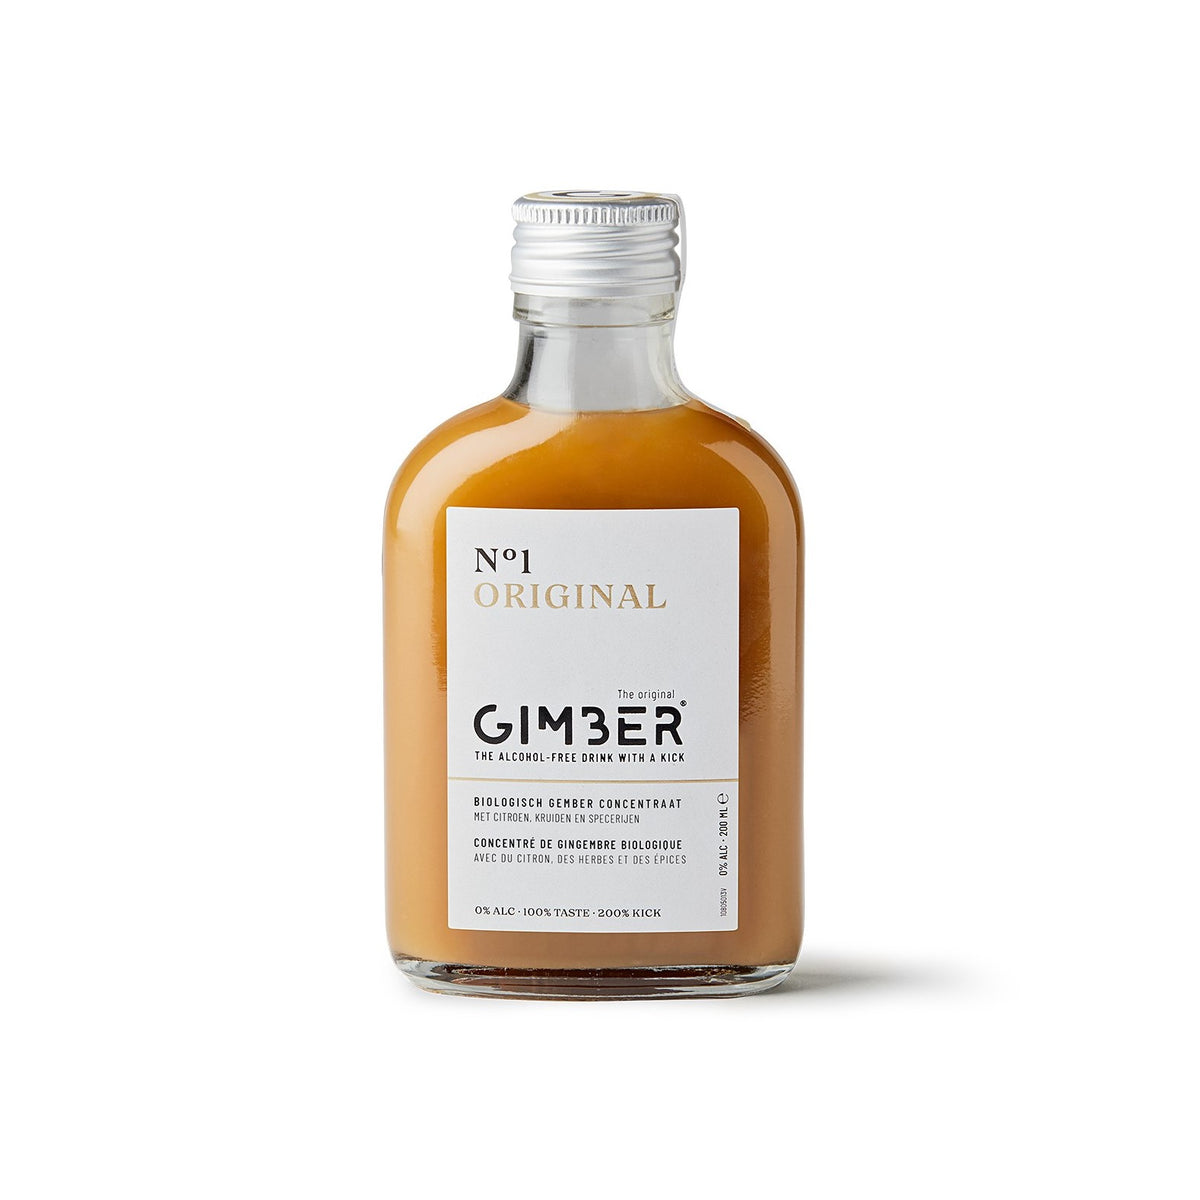 Gimber Numéro 1 Original, 200 ml. Collection Producteur GIMBER, concentré de gingembre bio, peut être dégusté dans des cocktails et des mocktails sans alcool. Peut servir aussi d'aide culinaire ou d'aide pâtissière.